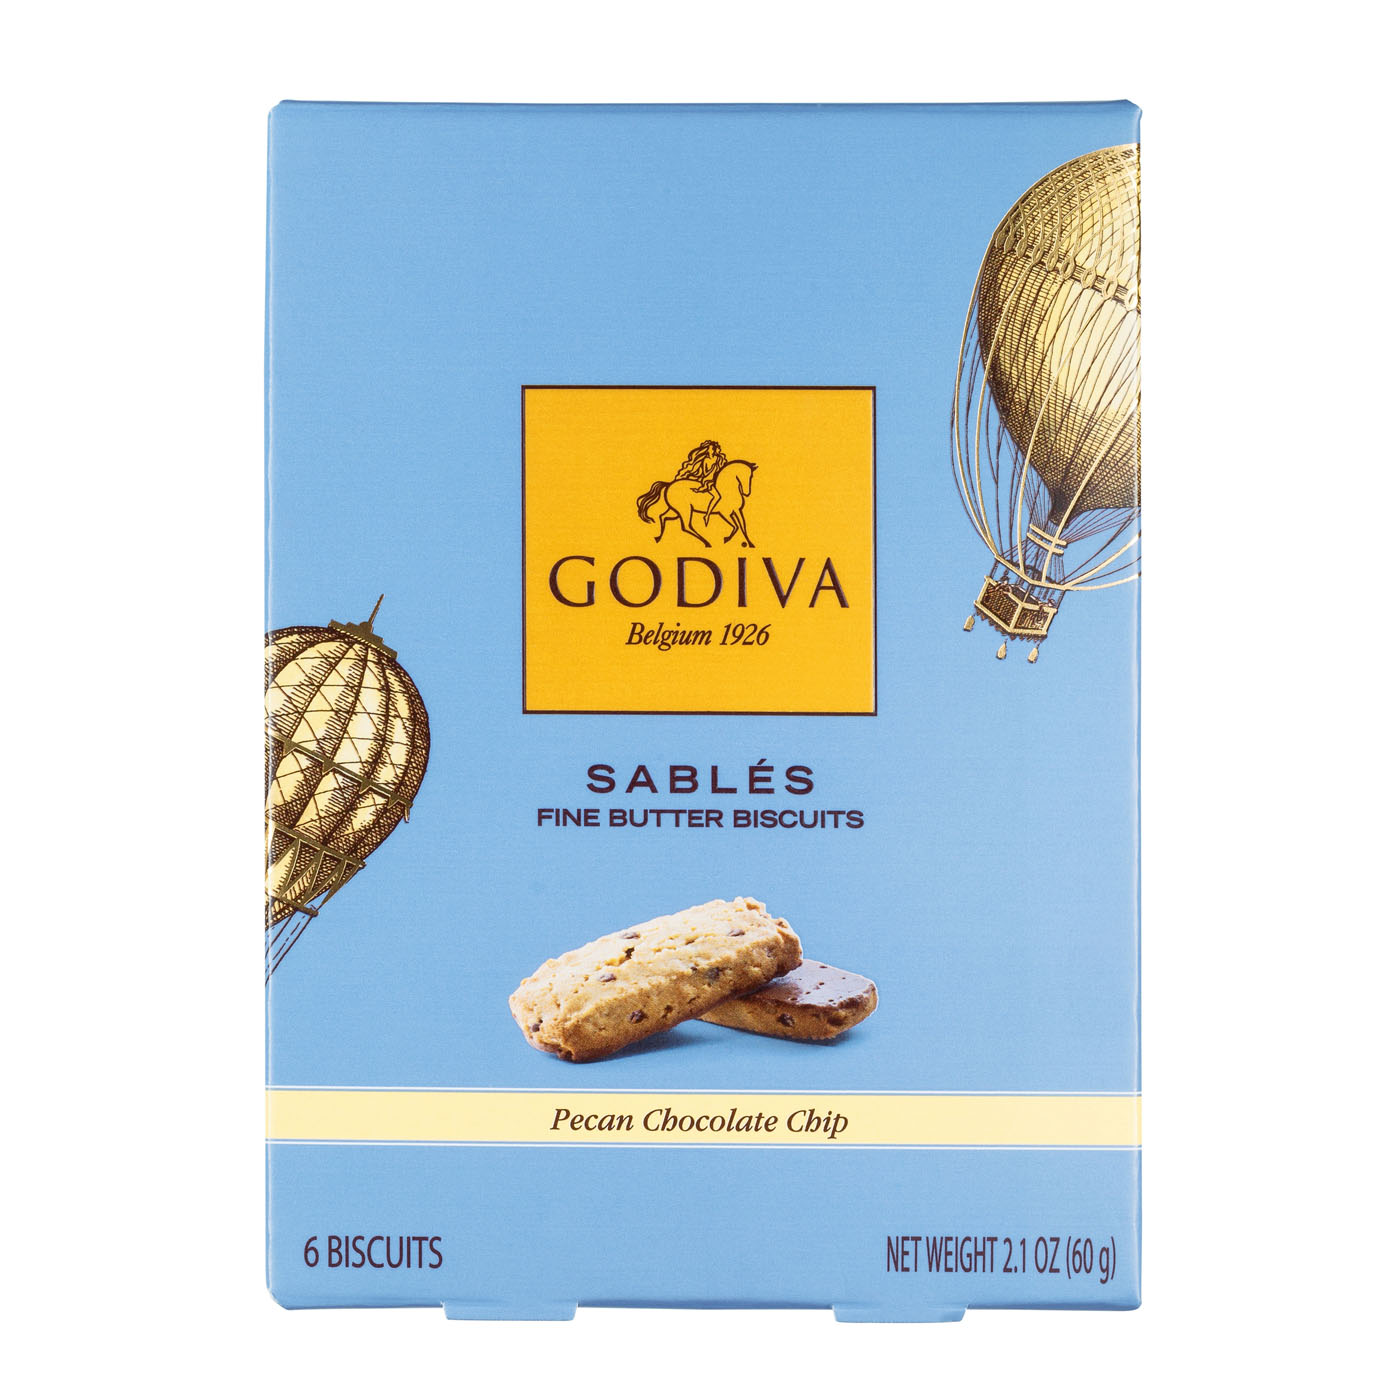 Yummy Godiva's Treats